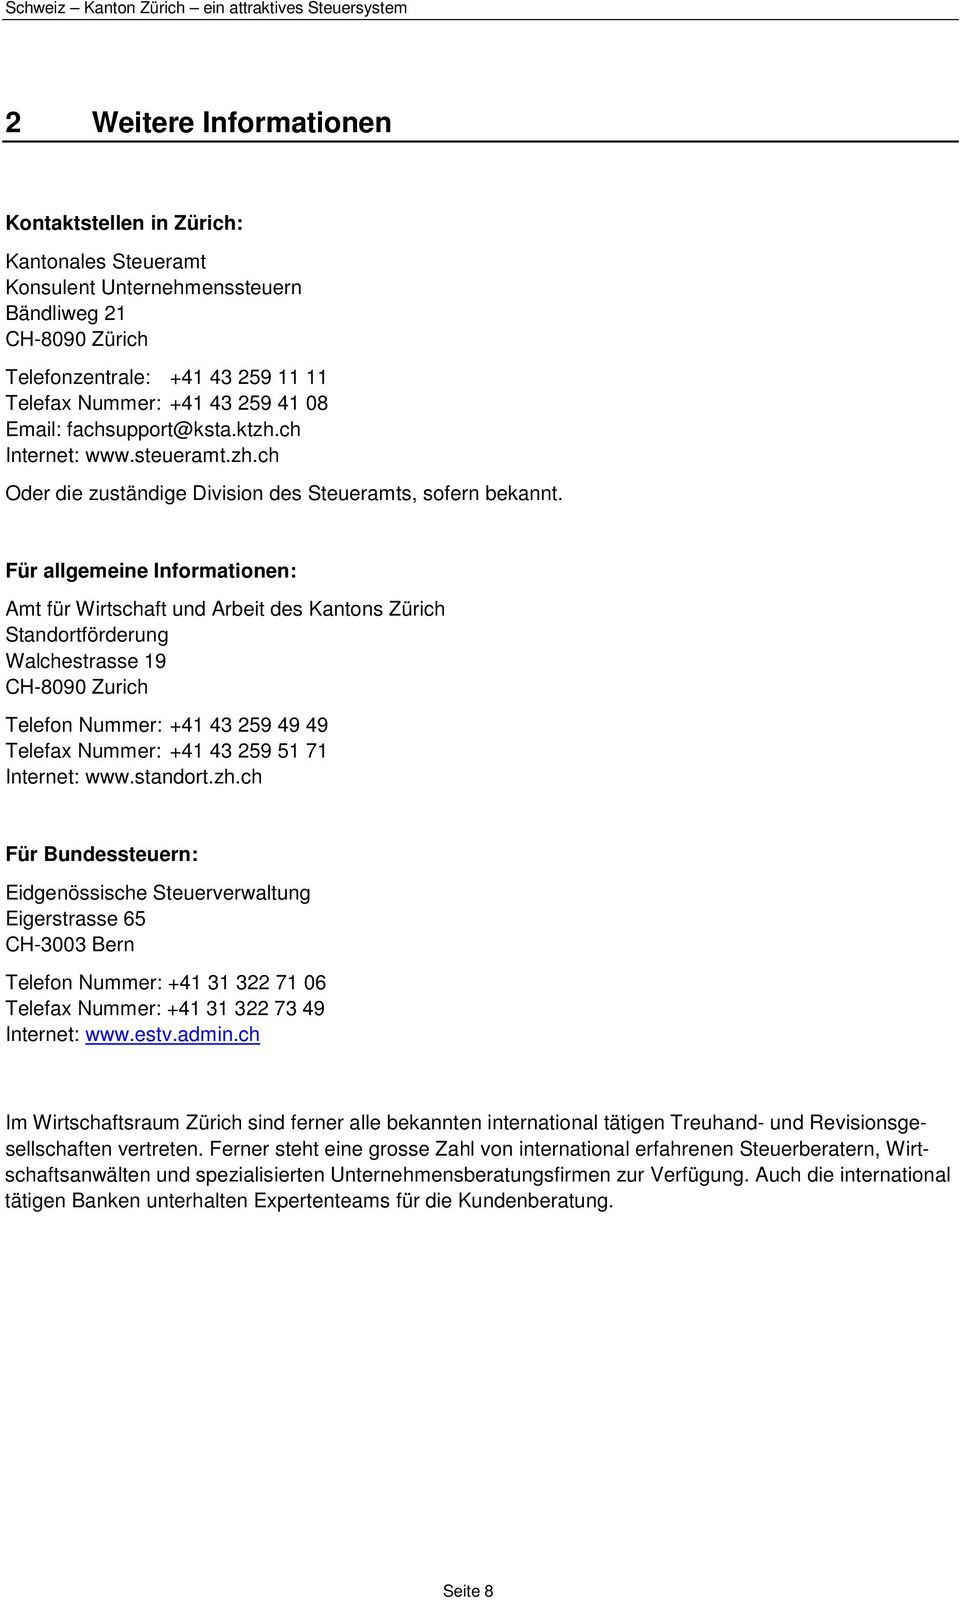 Für allgemeine Informationen: Amt für Wirtschaft und Arbeit des Kantons Zürich Standortförderung Walchestrasse 19 CH-8090 Zurich Telefon Nummer: +41 43 259 49 49 Telefax Nummer: +41 43 259 51 71